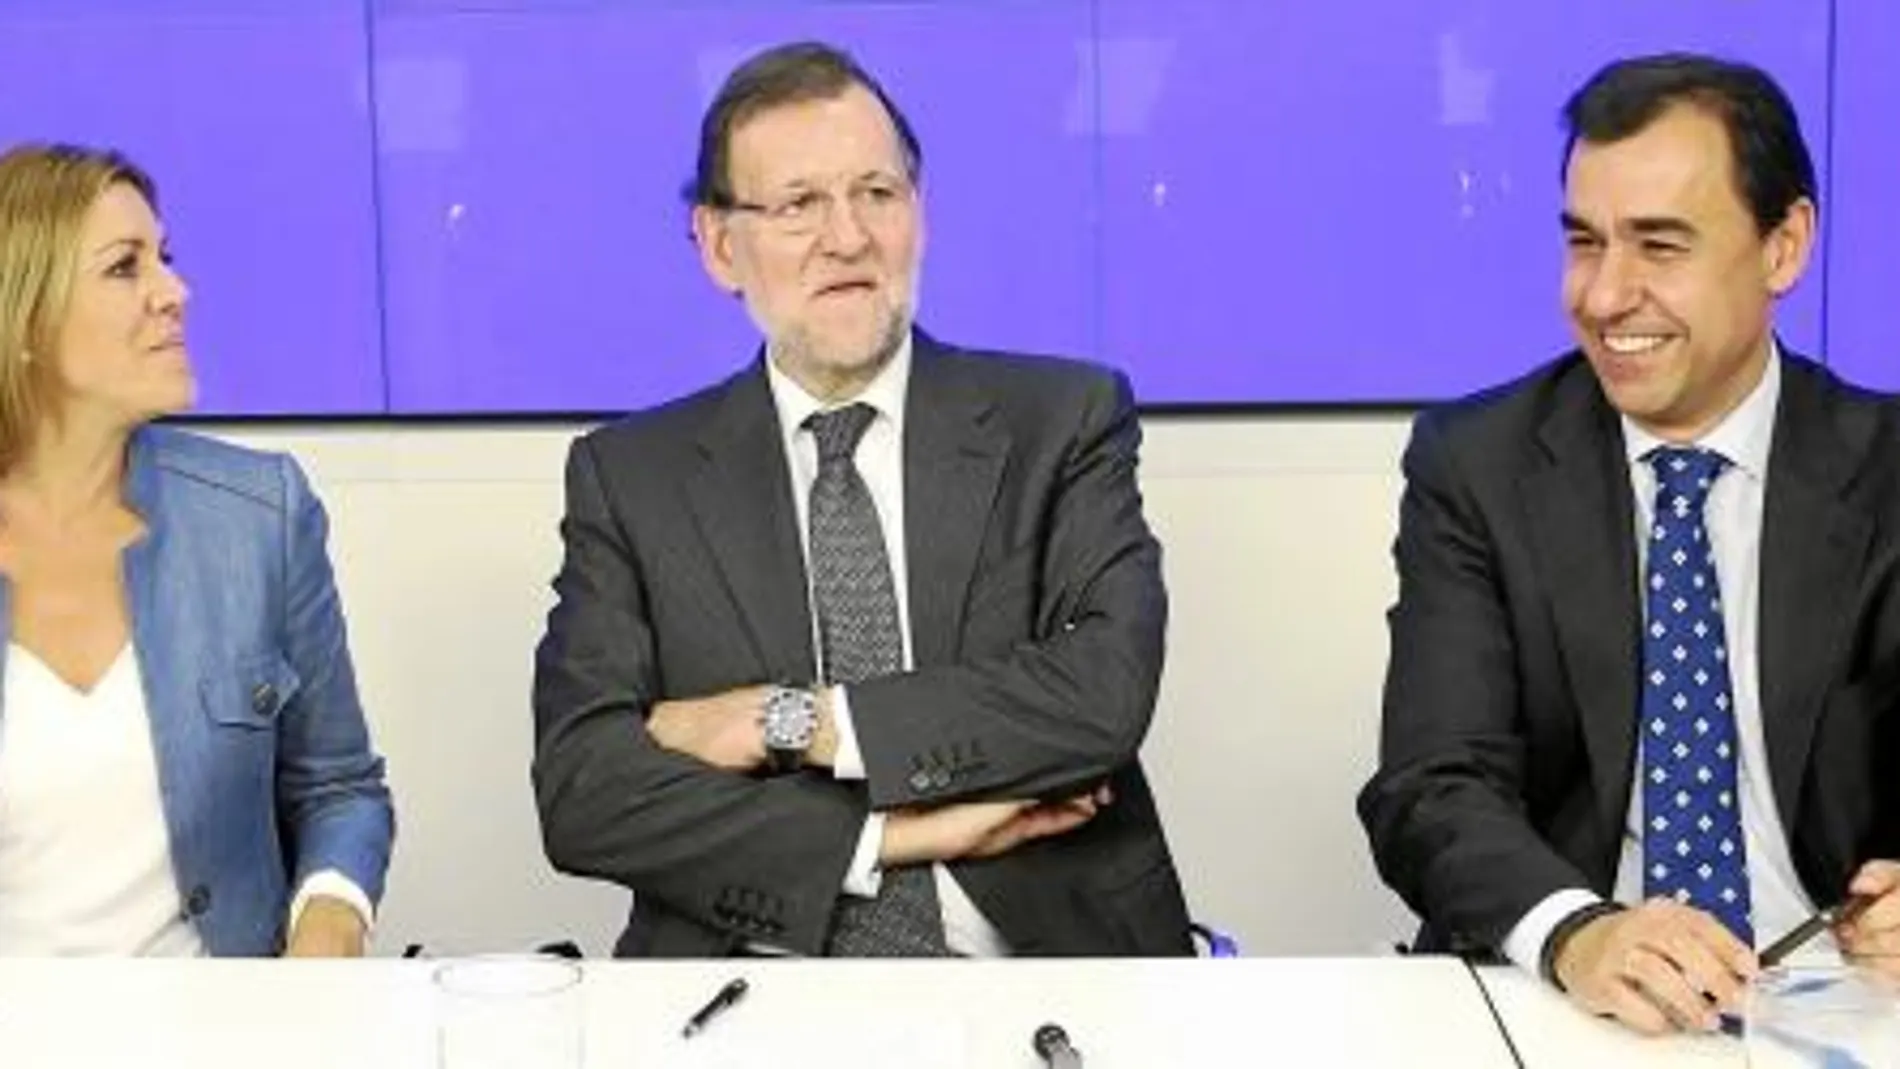 Pablo Casado, María Dolores de Cospedal, Mariano Rajoy, Fernando Martínez Maíllo y Javier Arenas, ayer, durante la reunión de la Junta Directiva Nacional del PP